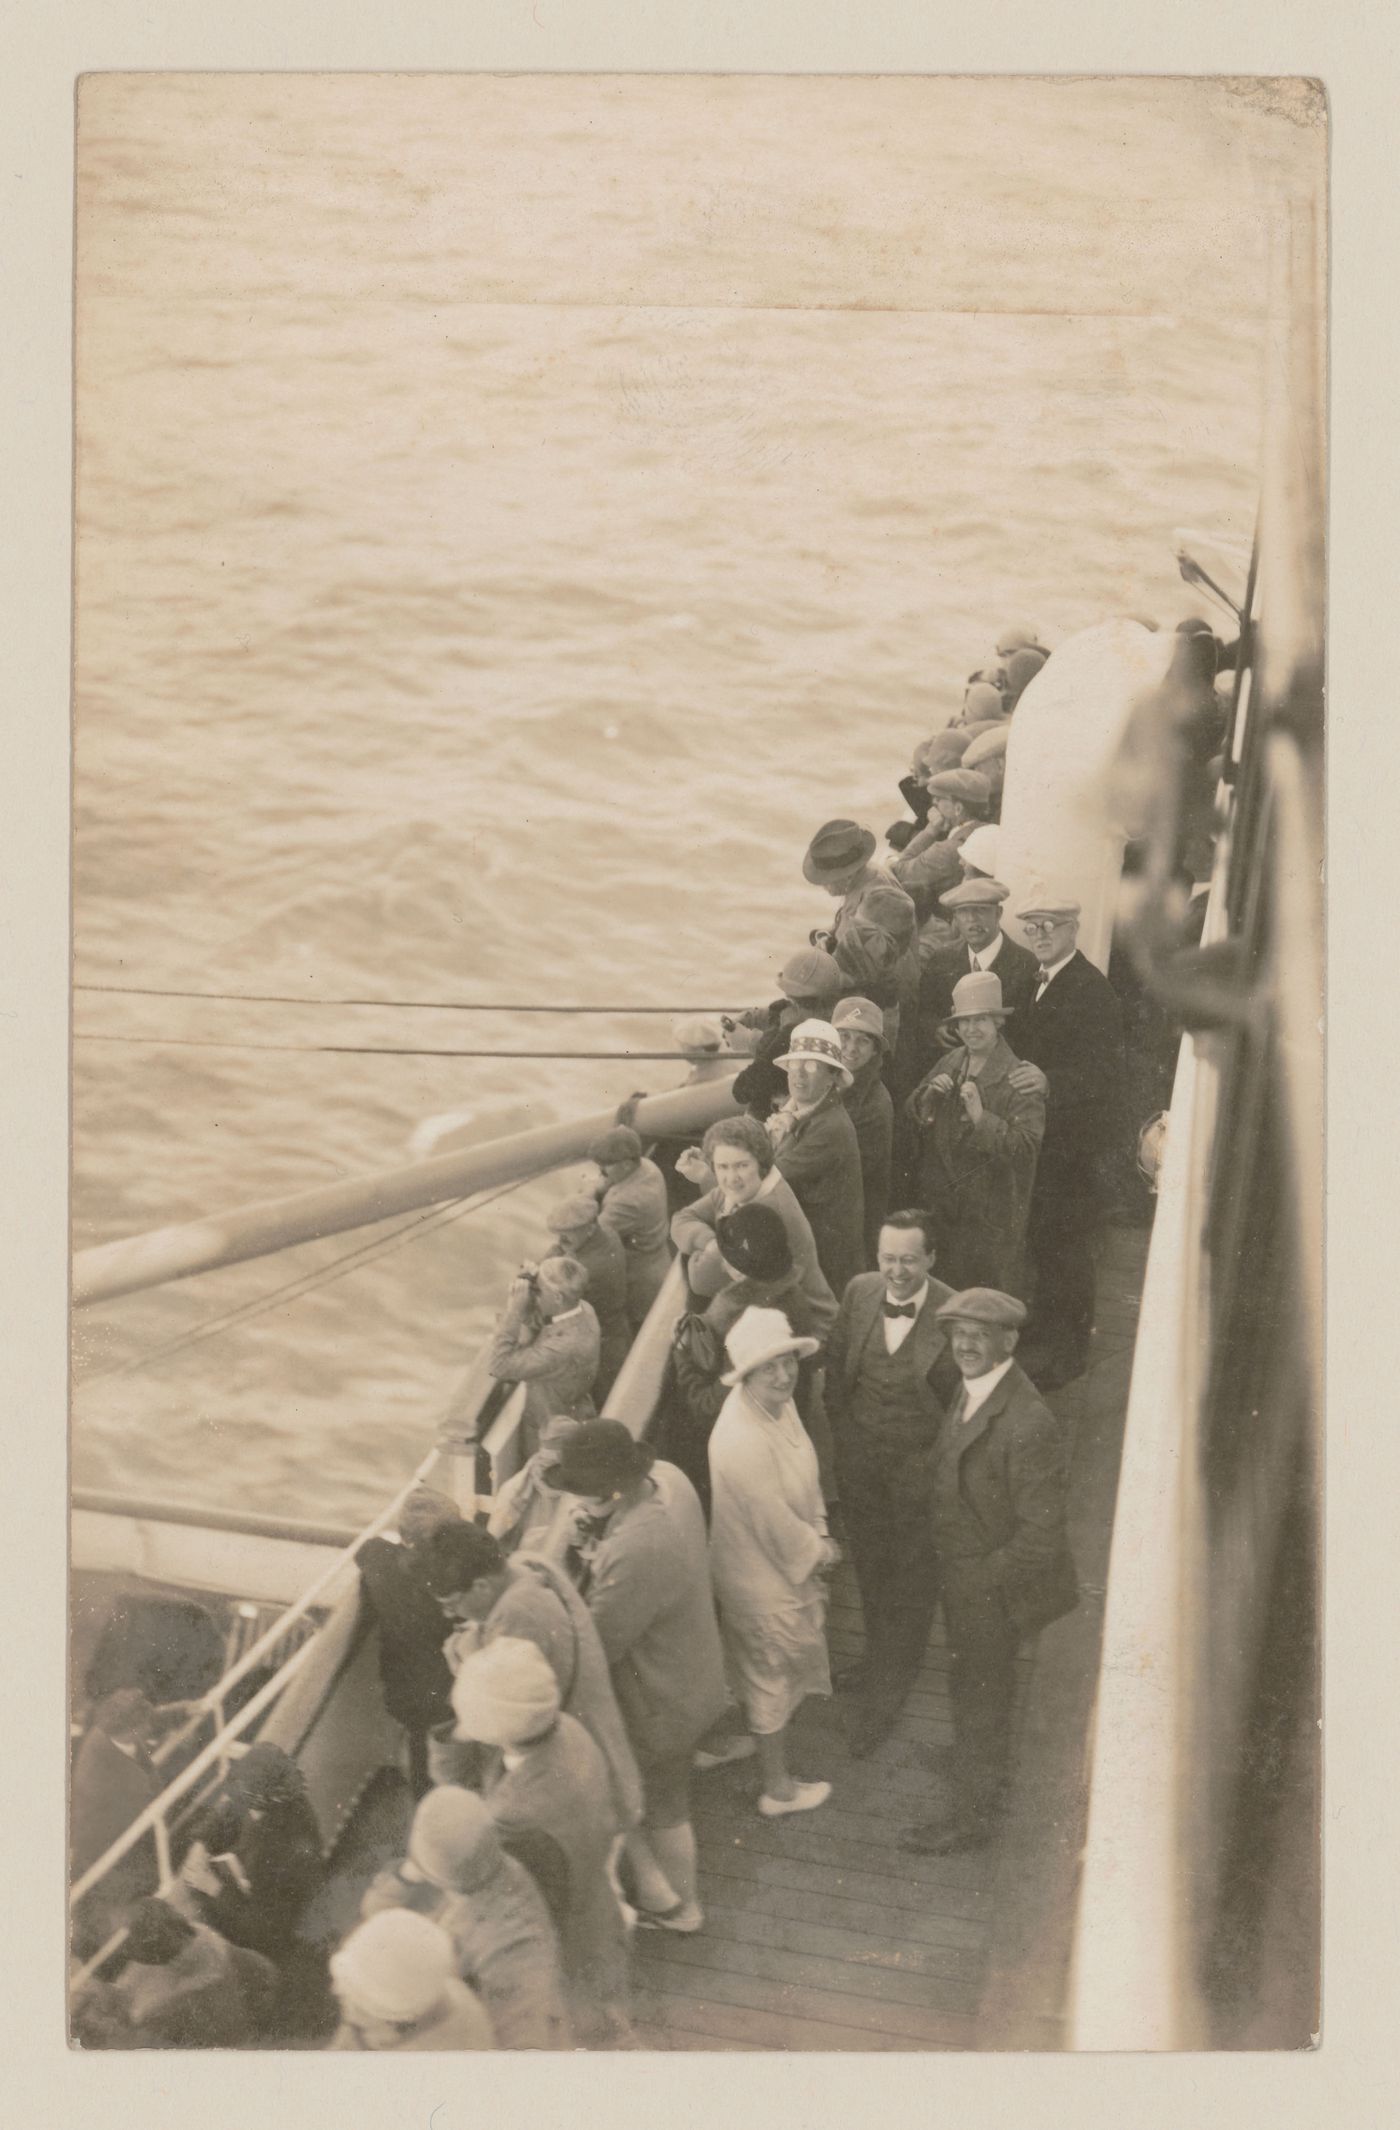 Carte postale avec vue d'un groupe de personnes, y compris Ernest Cormier, sur un bateau